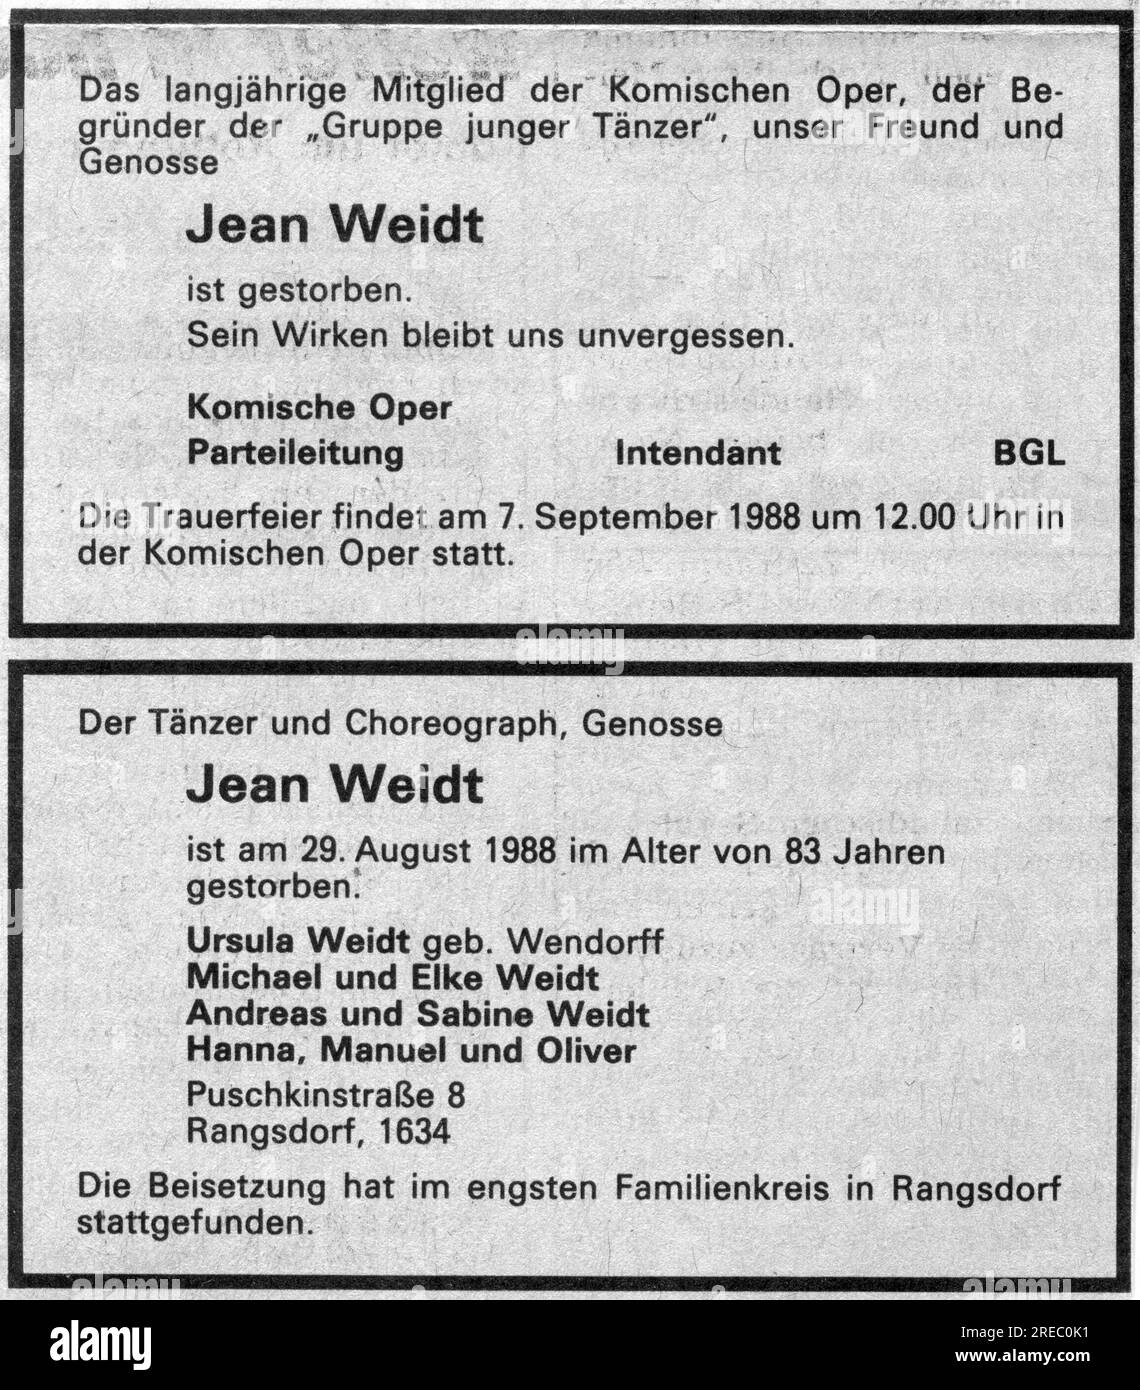 Weidt, Jean, 7.10.1904 - 29.8,1988, danseur allemand, né Hans Weidt, Avis de nécrologie, septembre 1988, ADDITIONAL-RIGHTS-CLEAR-INFO-NOT-AVAILABLE Banque D'Images